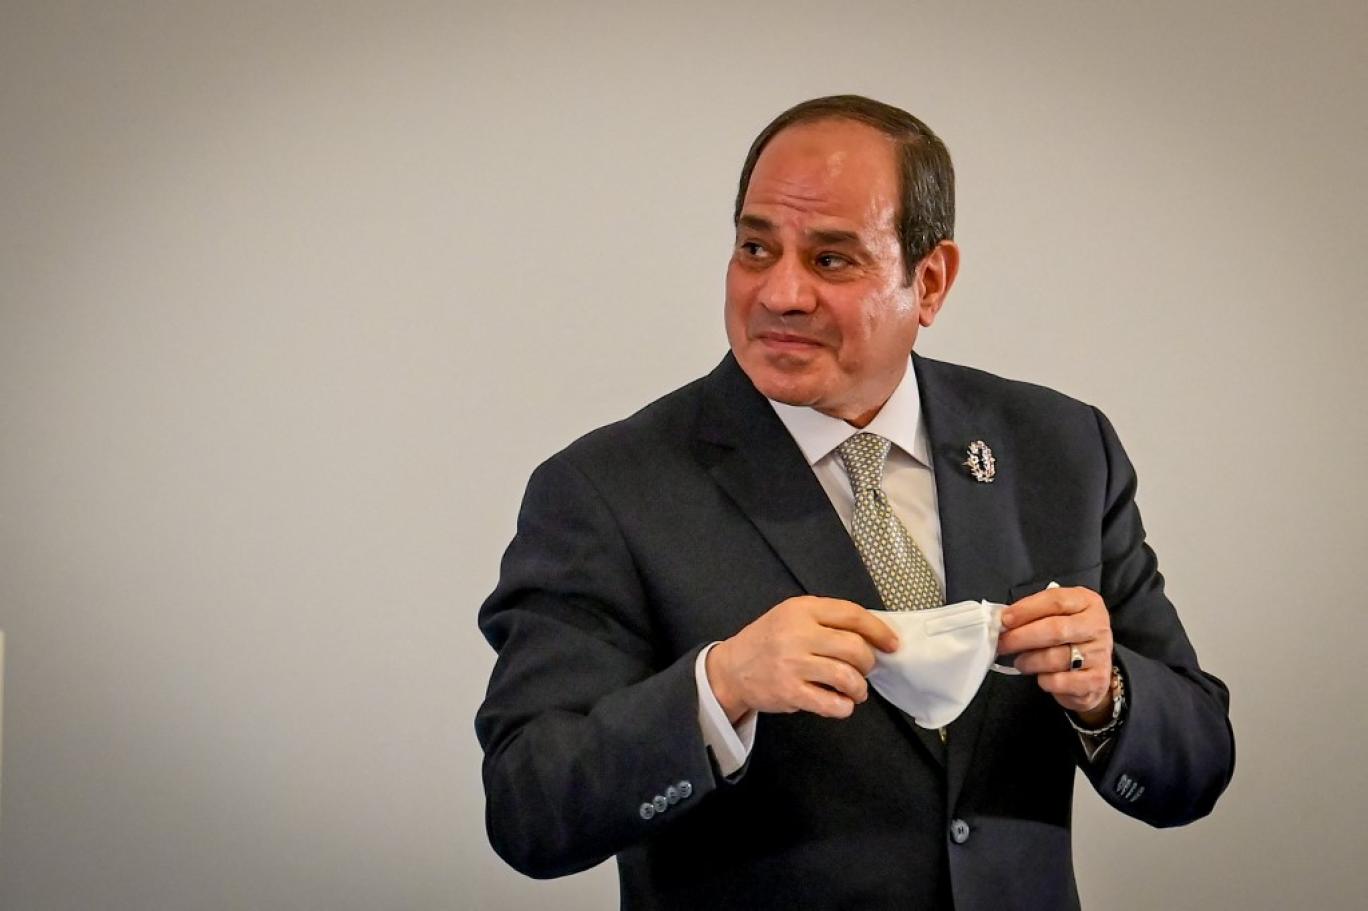 ماذا بعد دعوة السيسي إلى حوار سياسي في مصر؟ | اندبندنت عربية